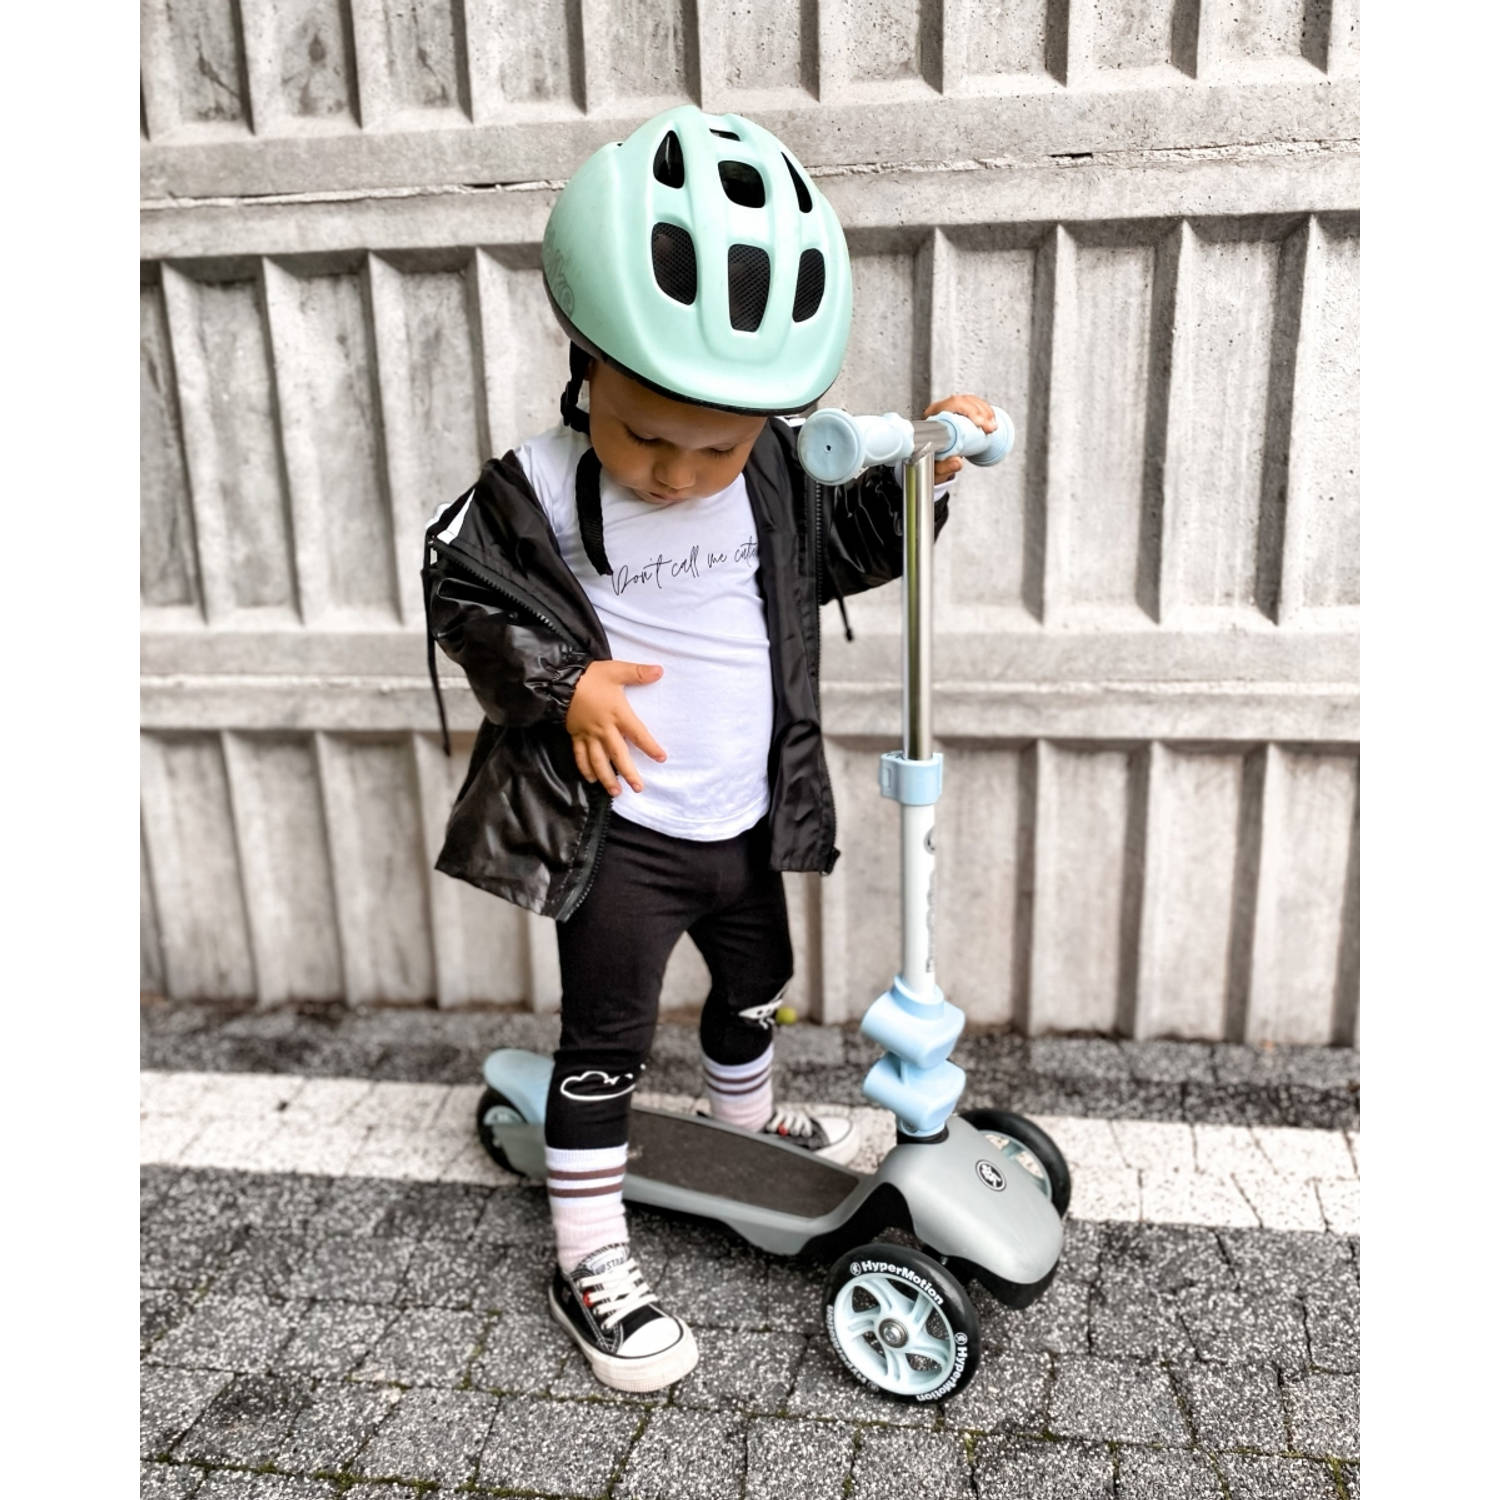 Vervloekt Ver weg band Hypermotion step blauw loopfiets scooter kinderfiets voor jongen | Blokker